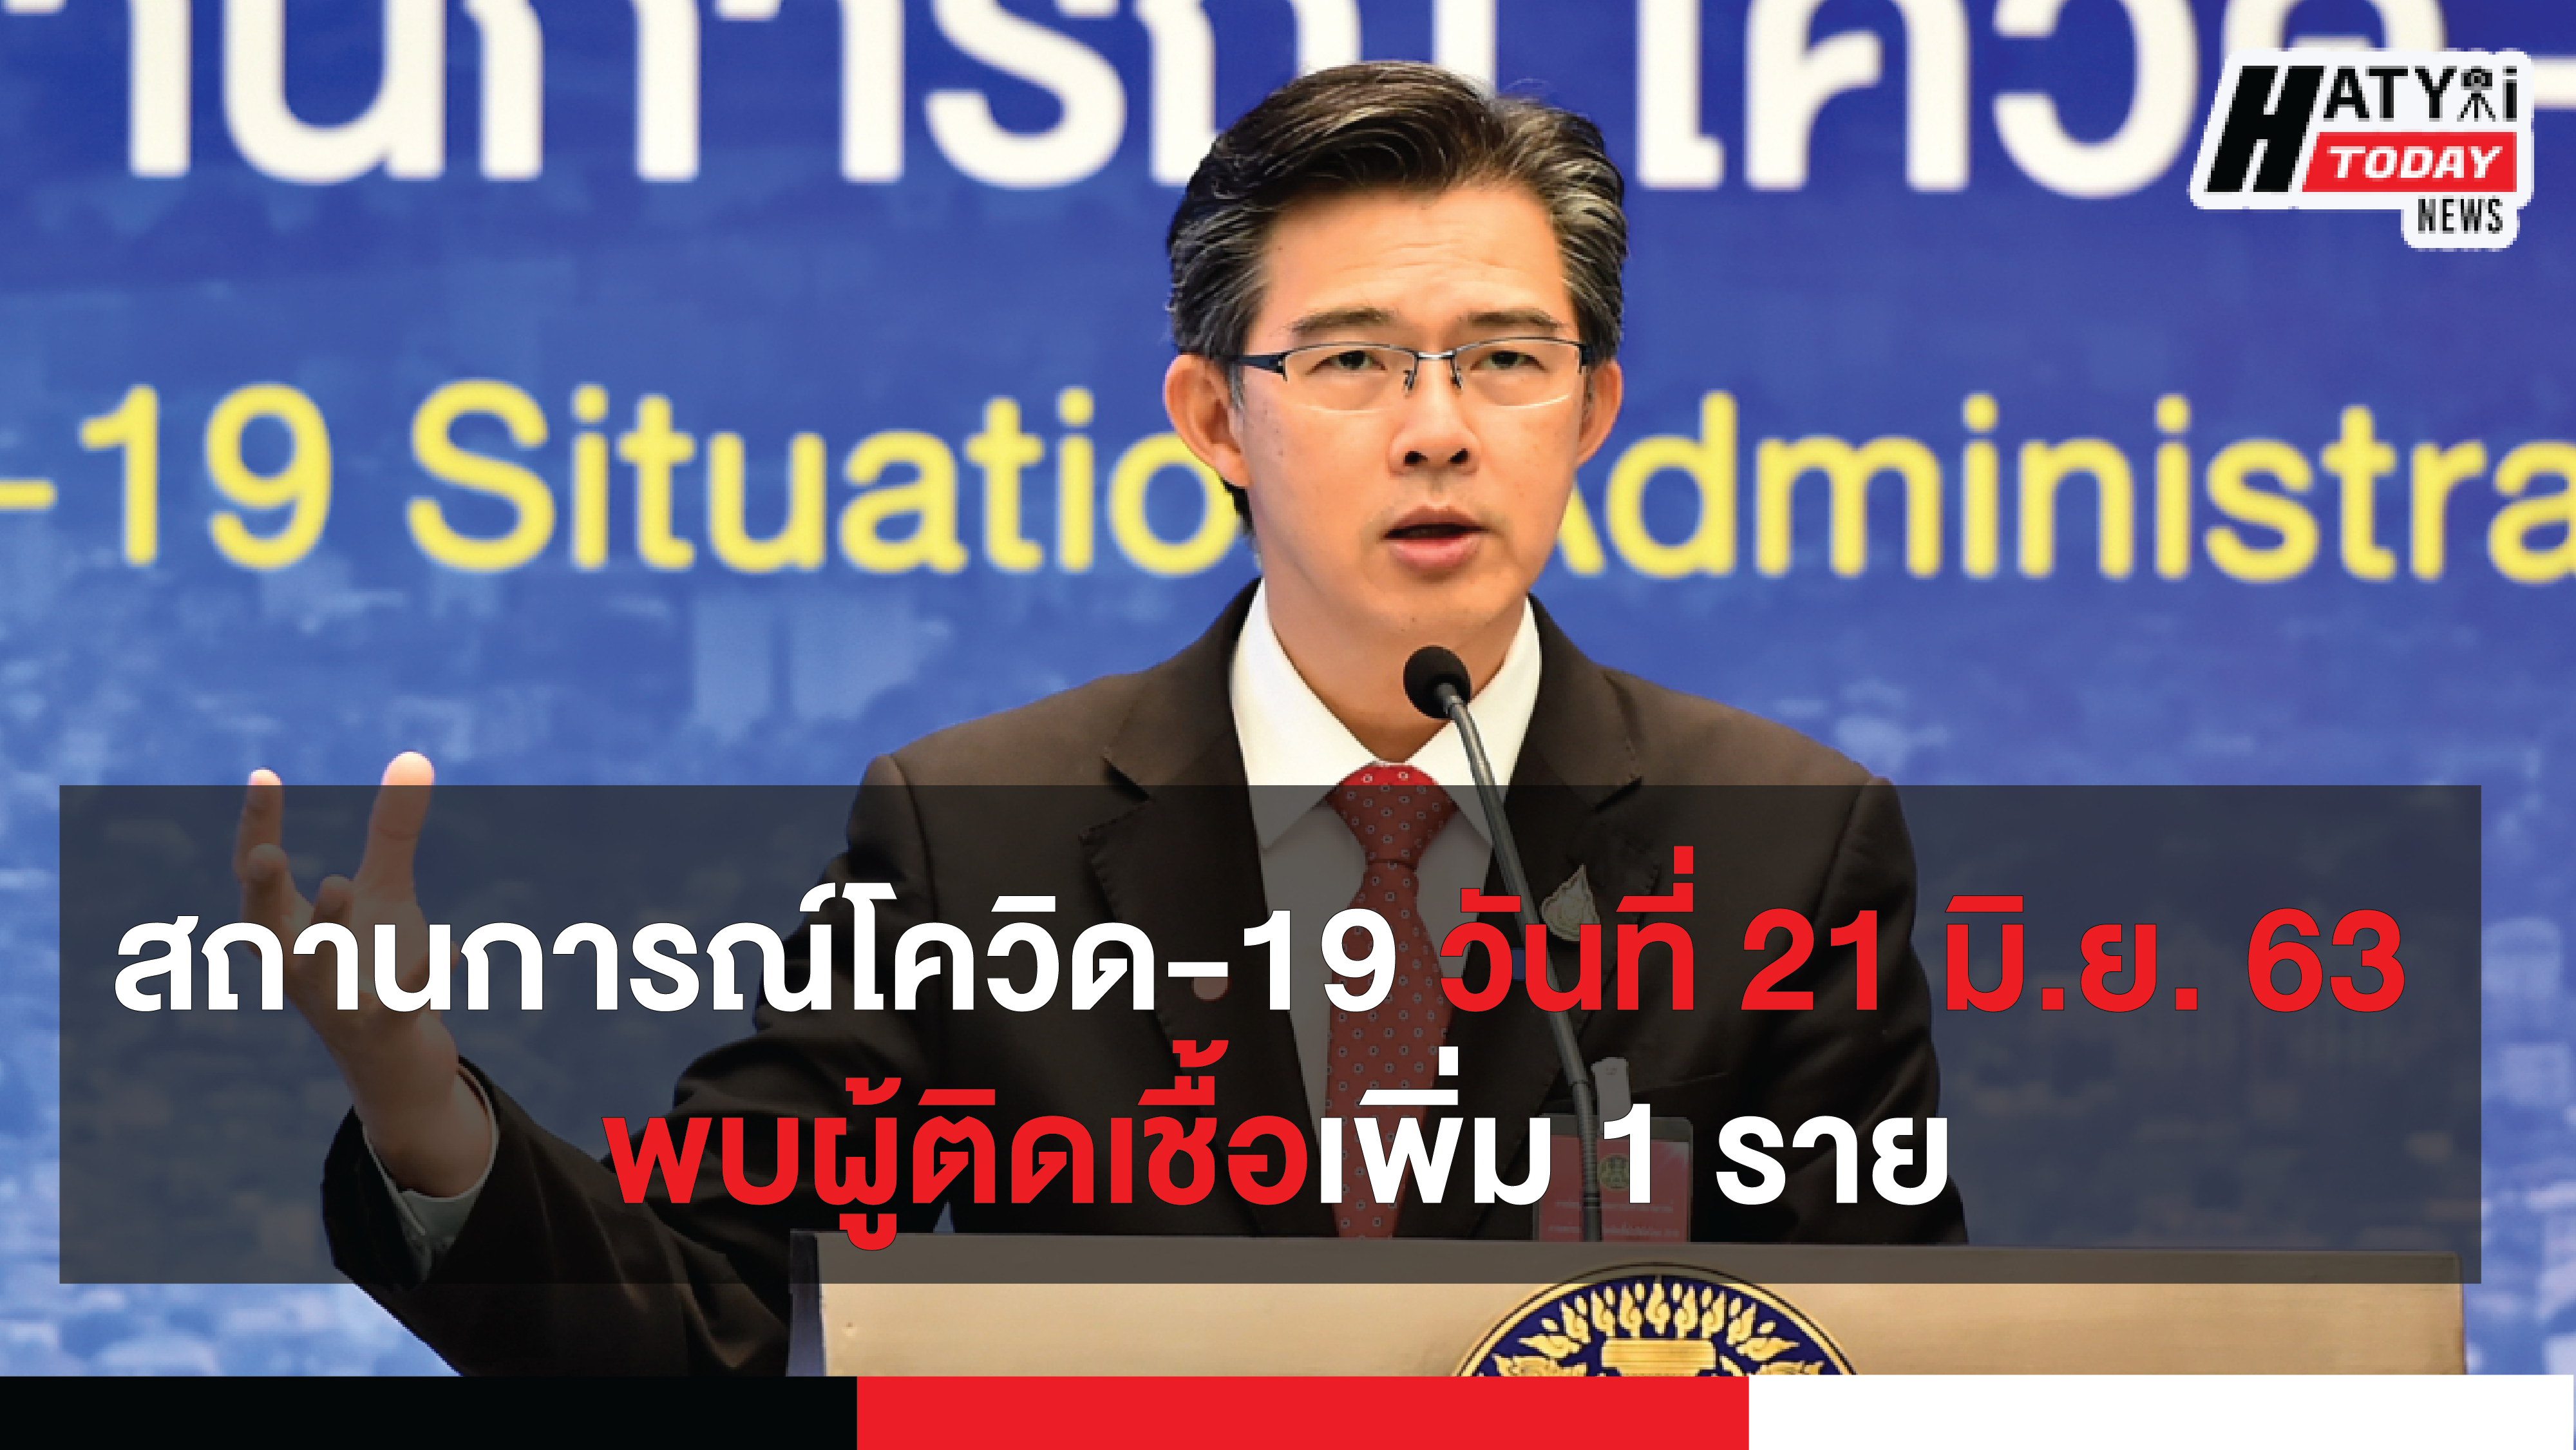 สถานการณ์โควิด-19 วันที่ 21 มิถุนายน 2563 พบผู้ติดเชื้อเพิ่ม 1 รายเป็นเด็กชายไทย อายุ 6 ปี